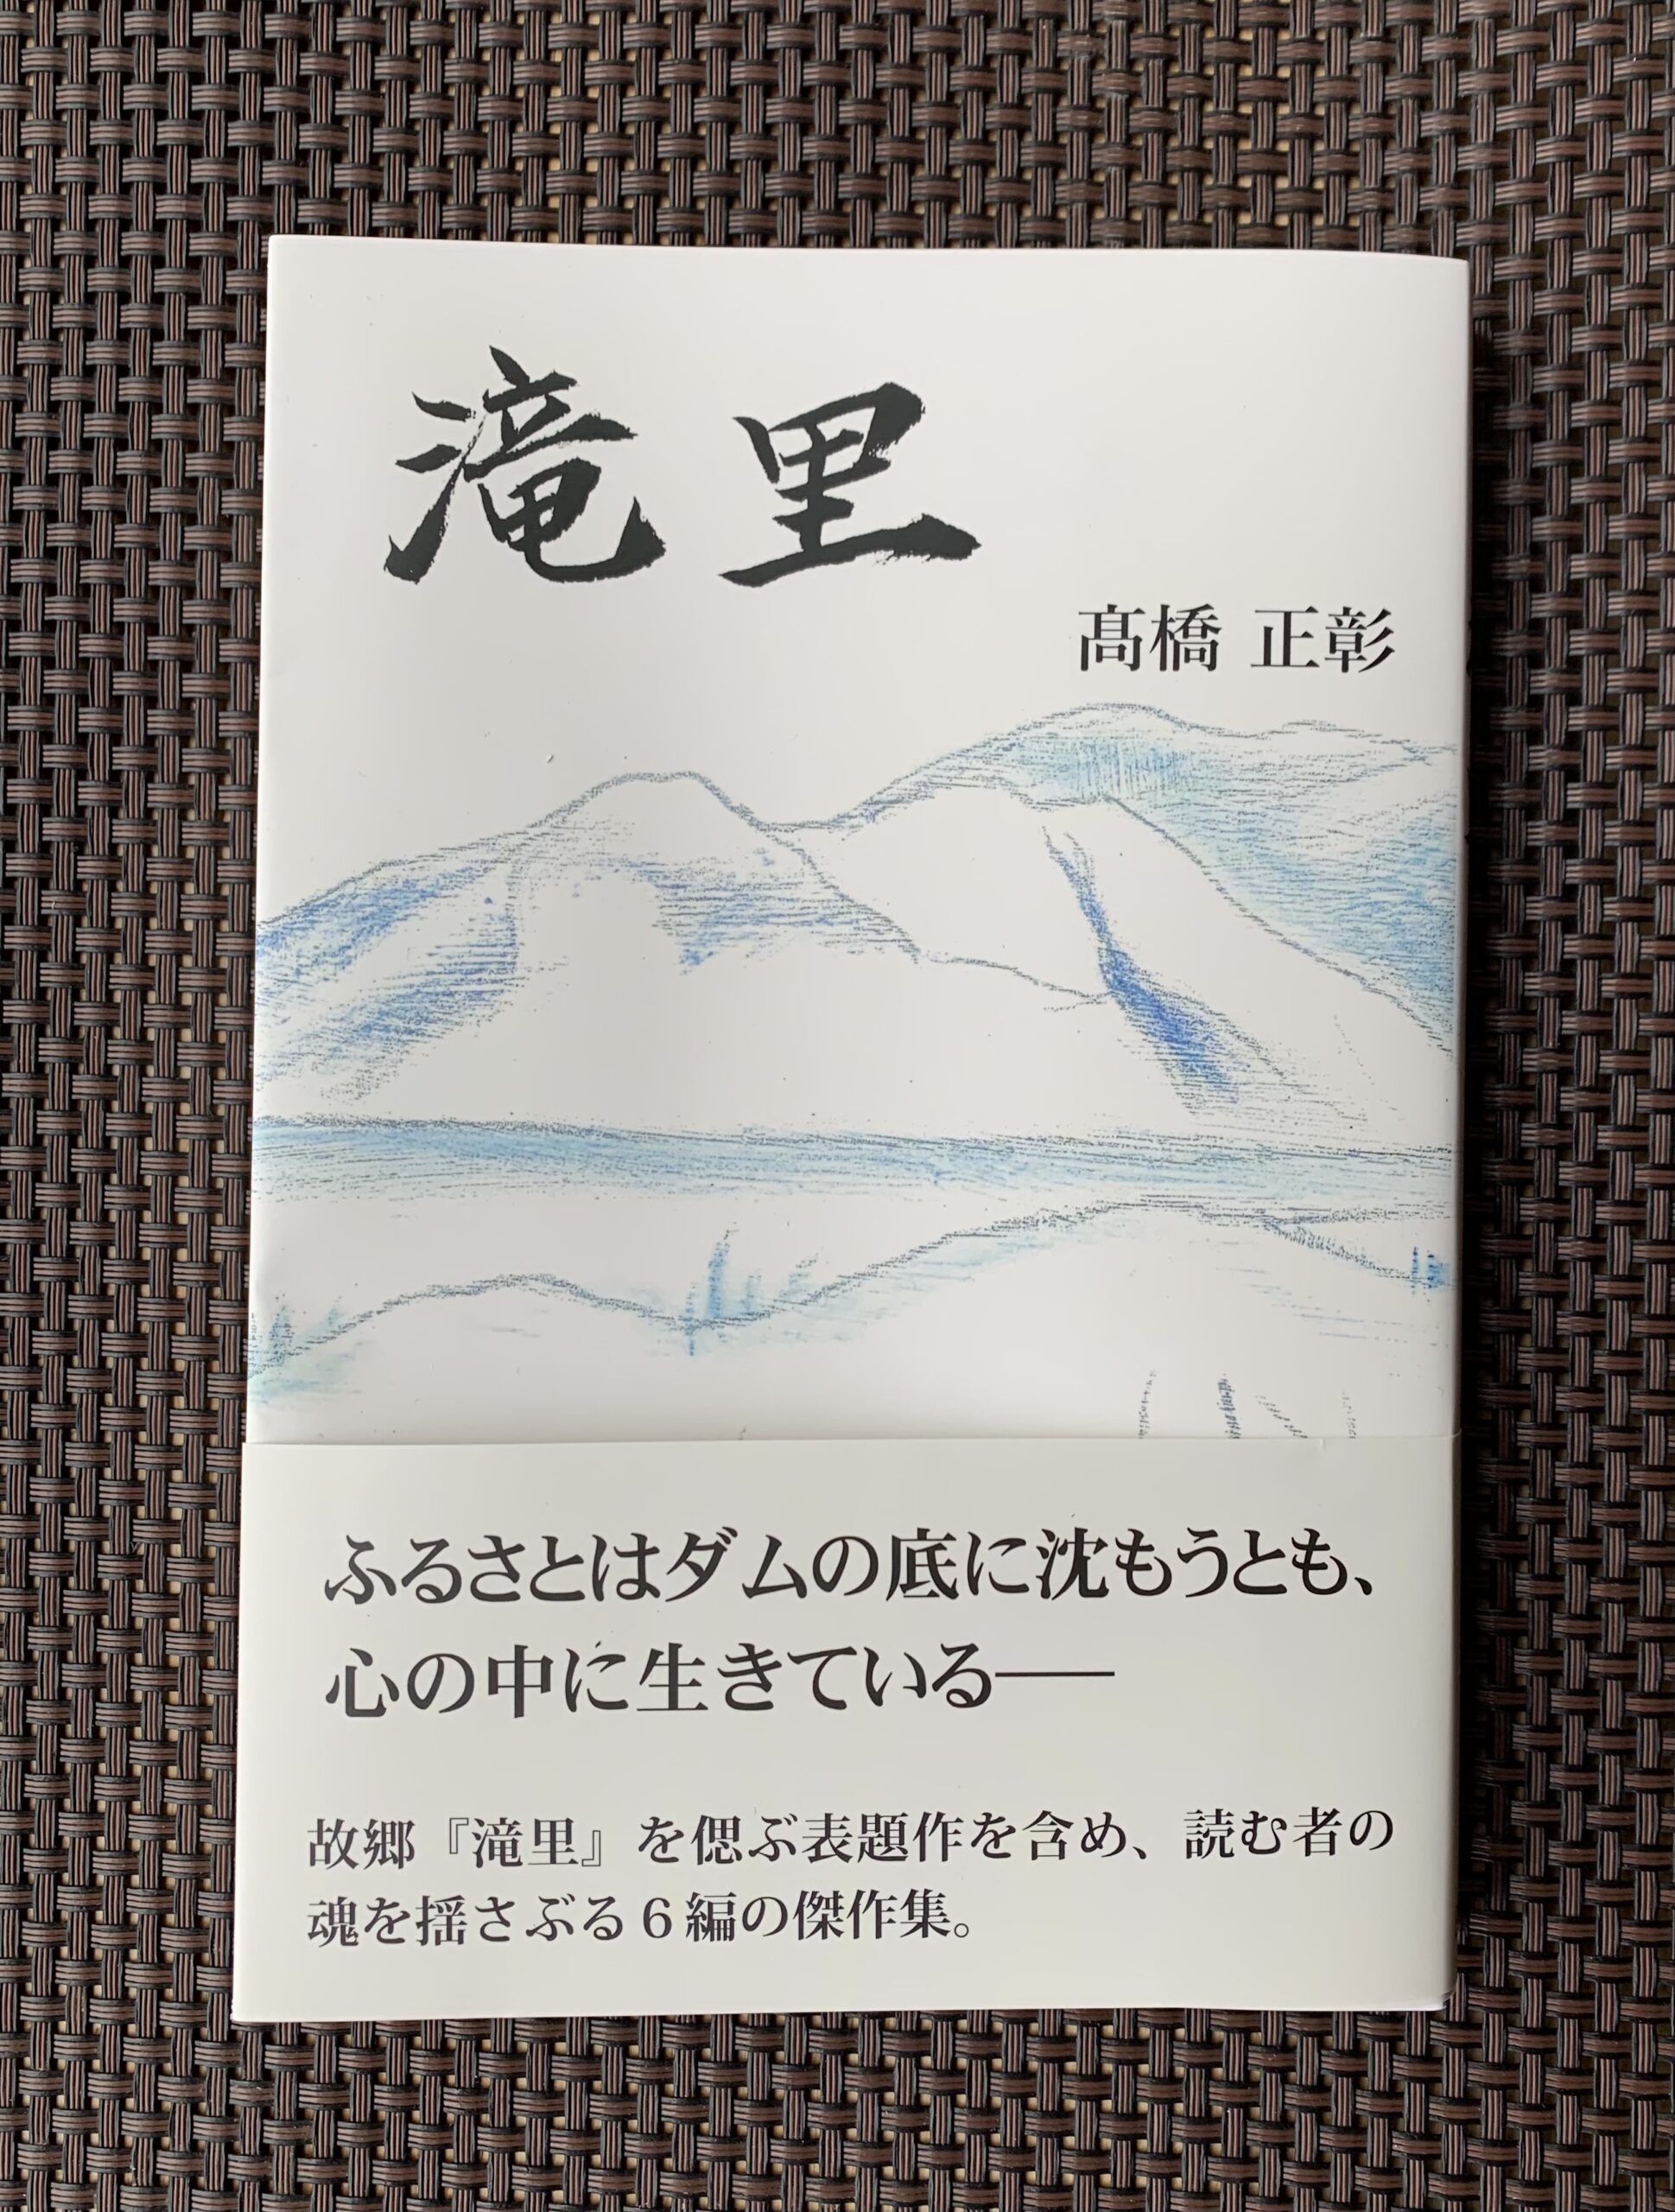 高橋文化協会会長が小説「滝里」を出版しました